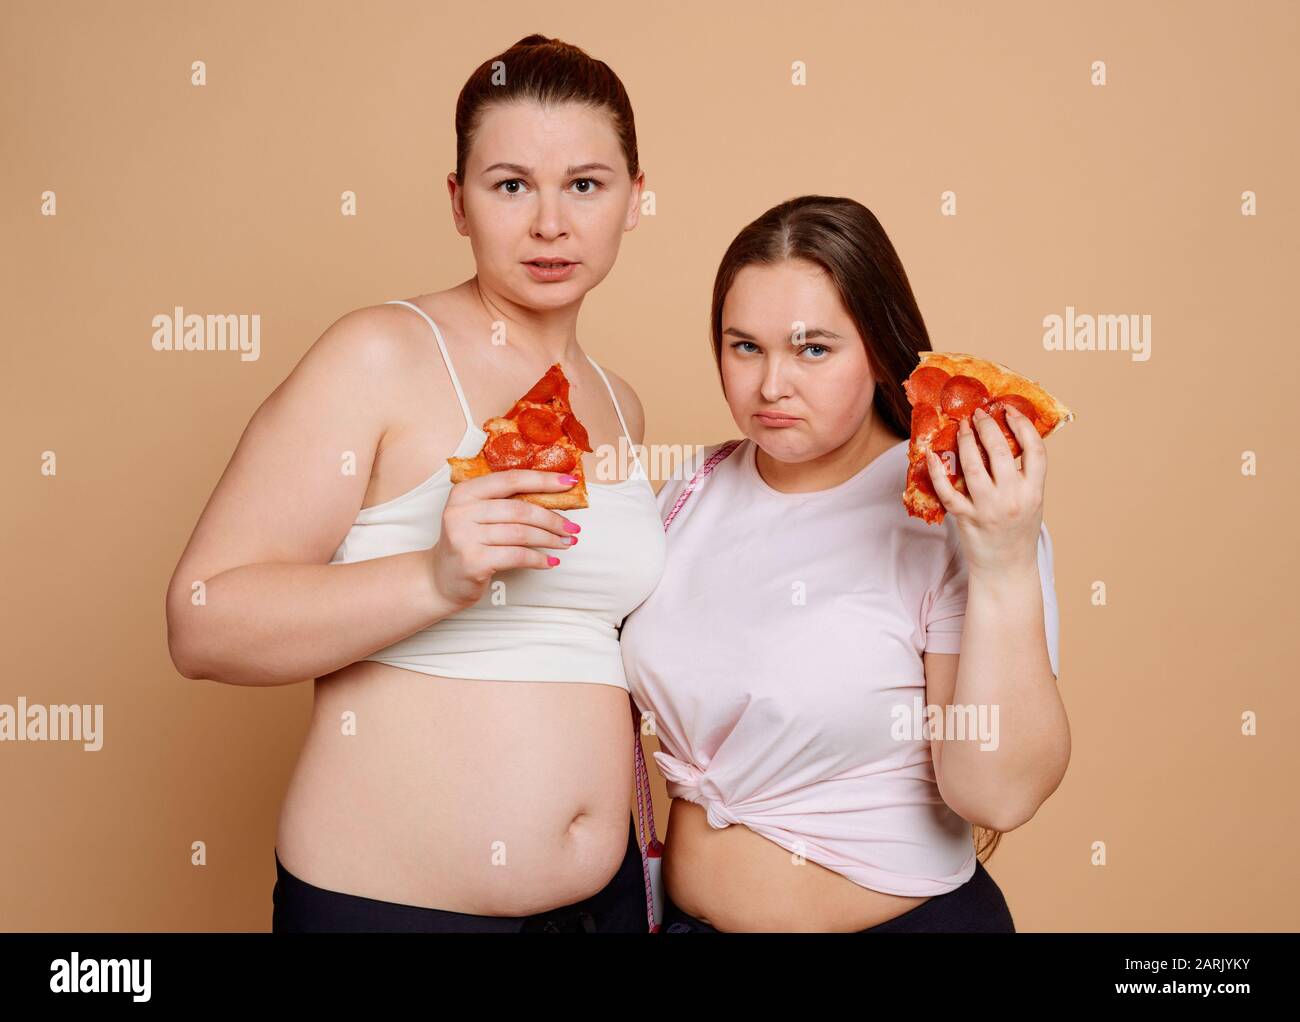 Frauen, die Pizzascheiben halten und versuchen, mit dem Überessen aufzuhören Stockfoto